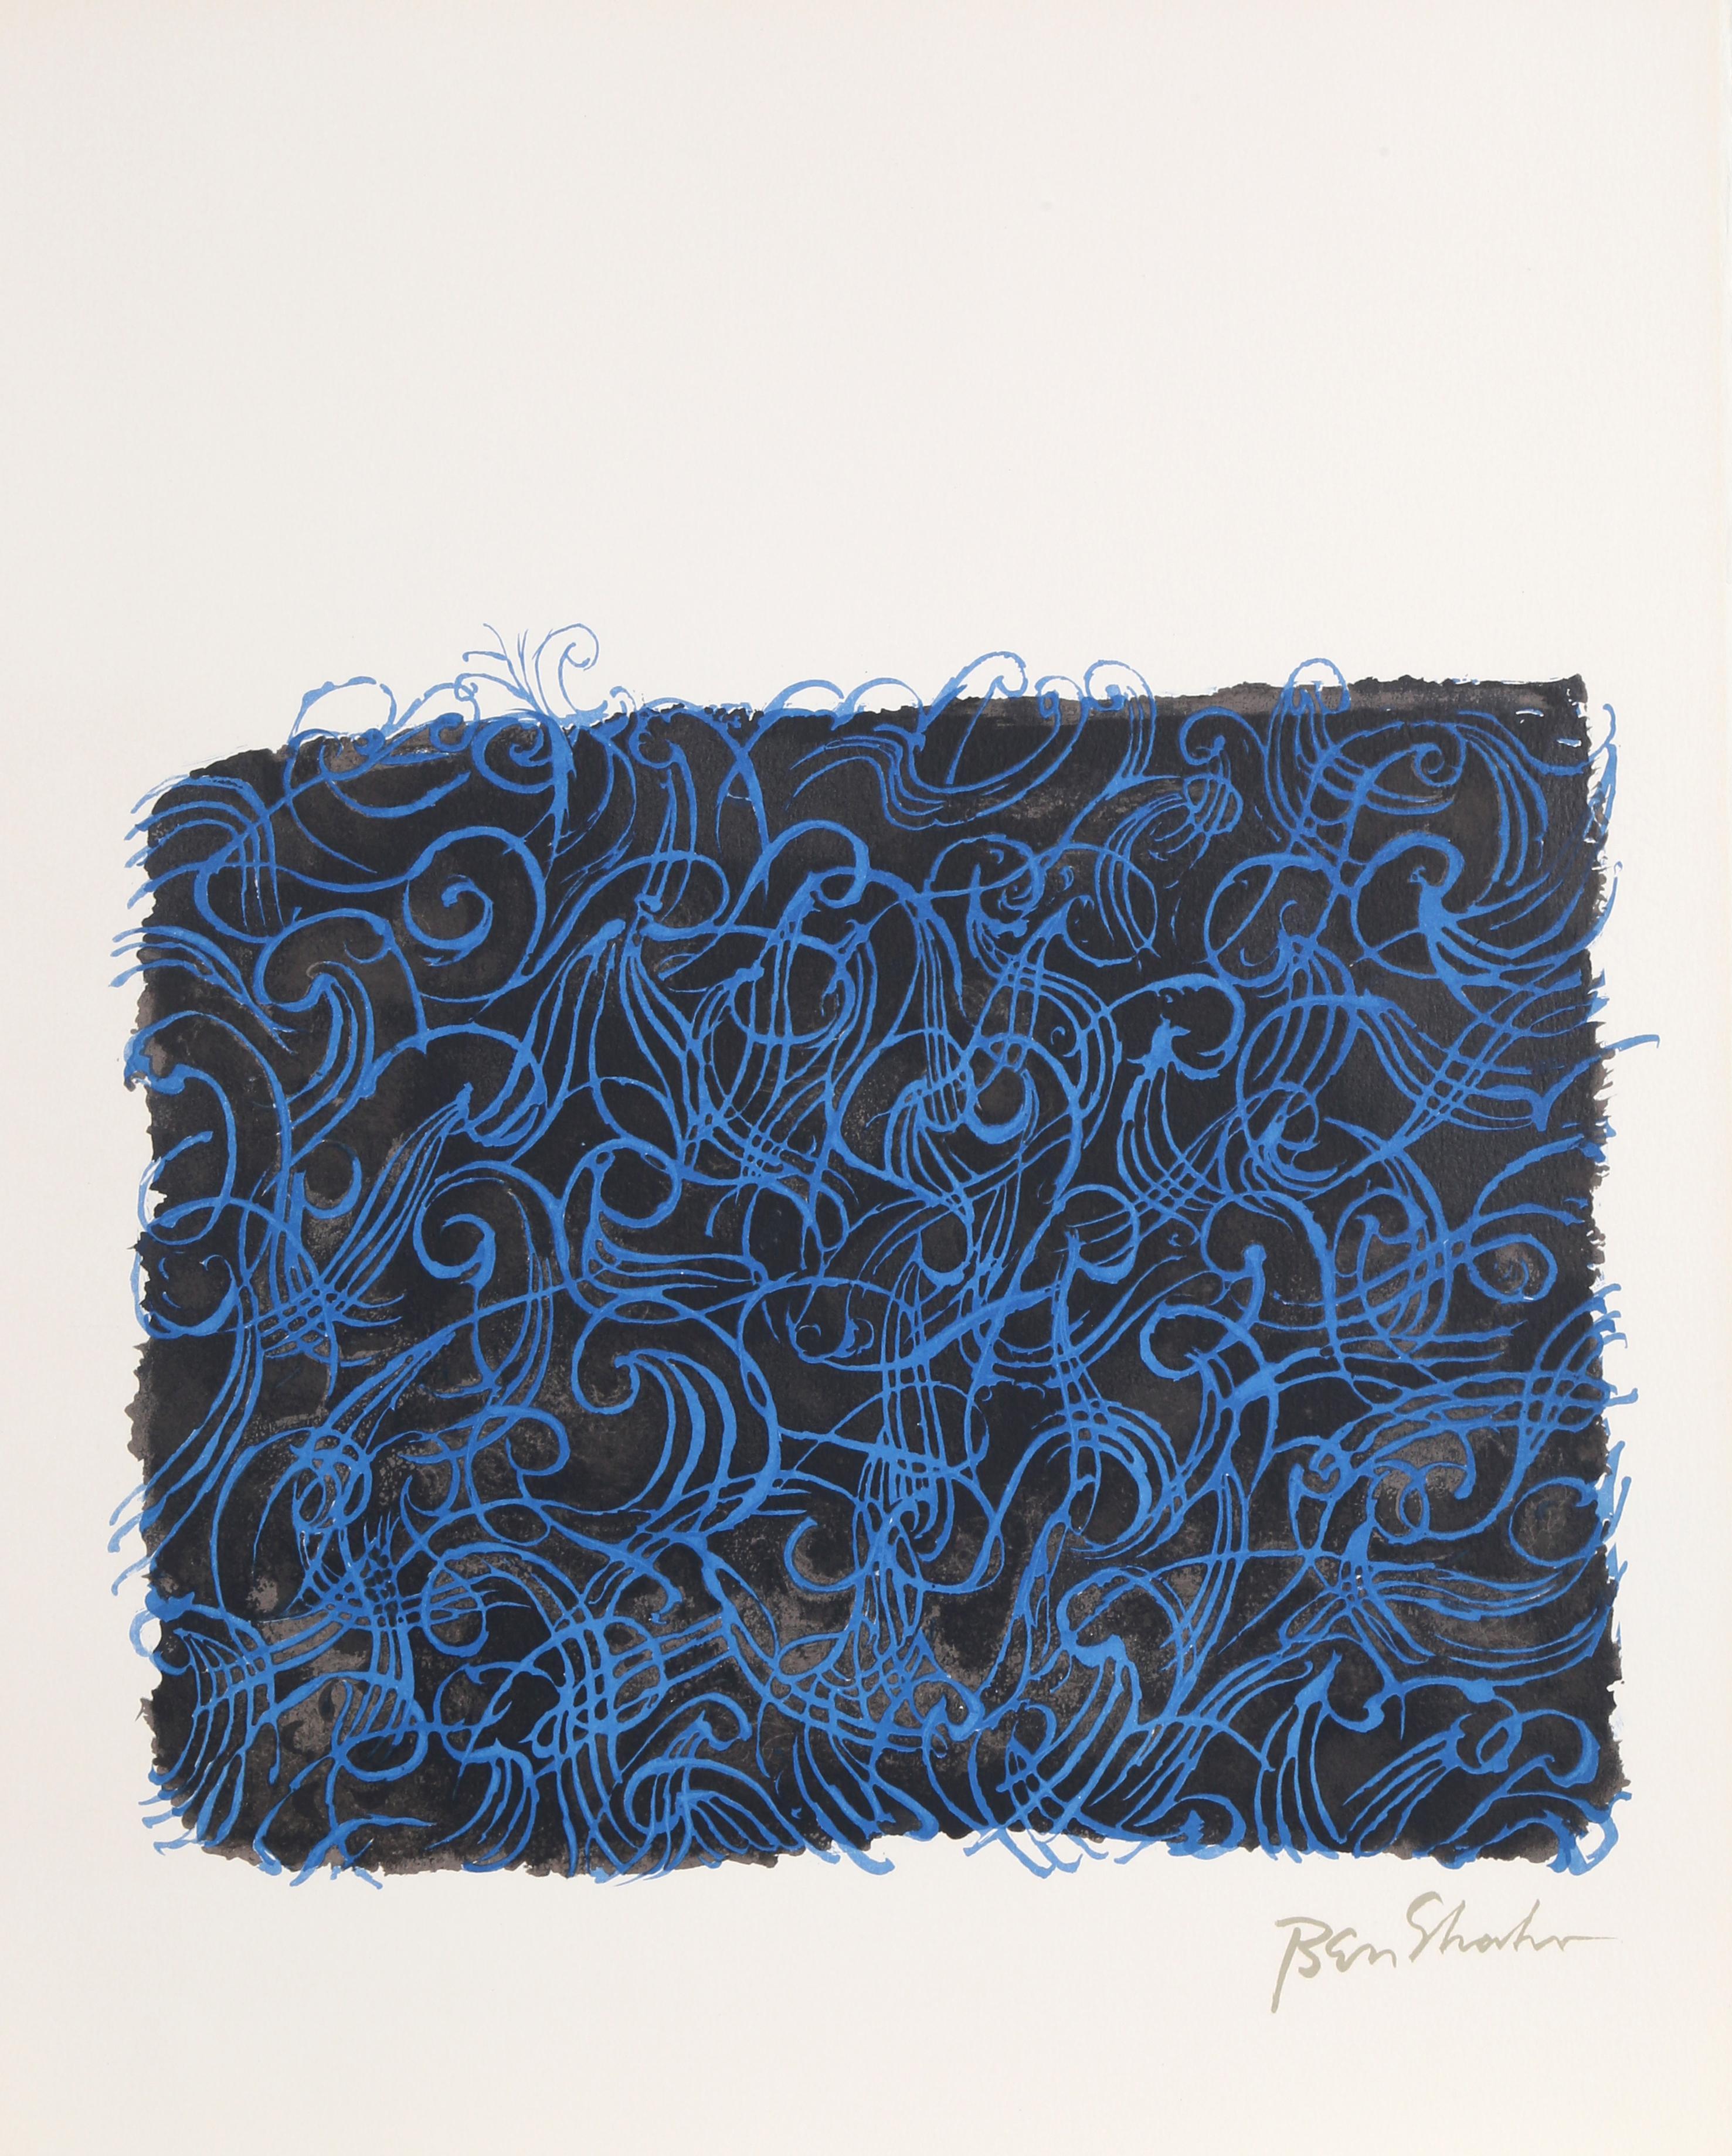 Künstler: Ben Shahn, Amerikaner (1898 - 1969)
Titel: Das Meer selbst aus der Rilke-Mappe
Jahr: 1968
Medium: Lithographie auf Arches, in der Platte signiert
Auflage: 750
Größe: 22,5 x 17,75 Zoll (57,15 x 45,09 cm)

Druckerei: Atelier Mourlot Ltd, New